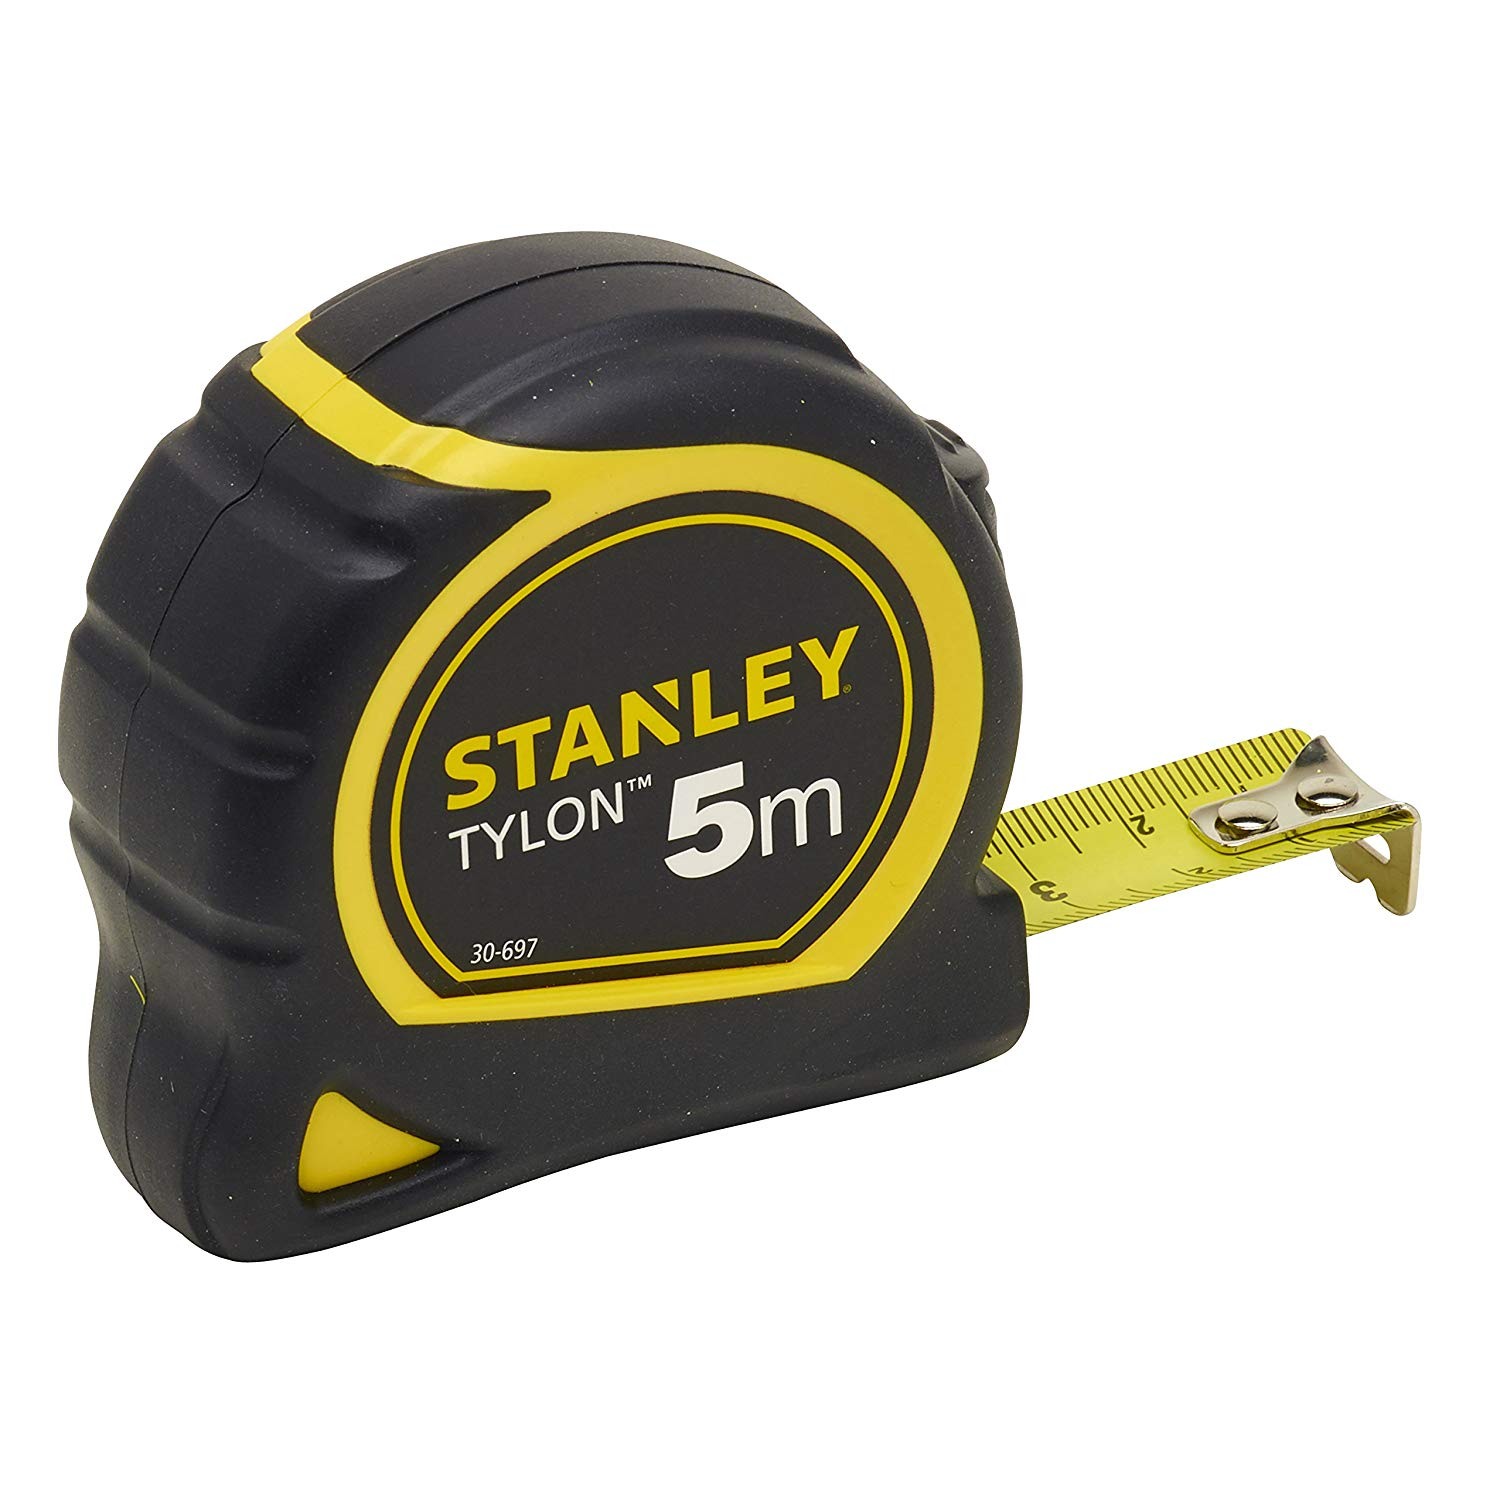 Ruleta Stanley Tylon 5m – 0-30-697